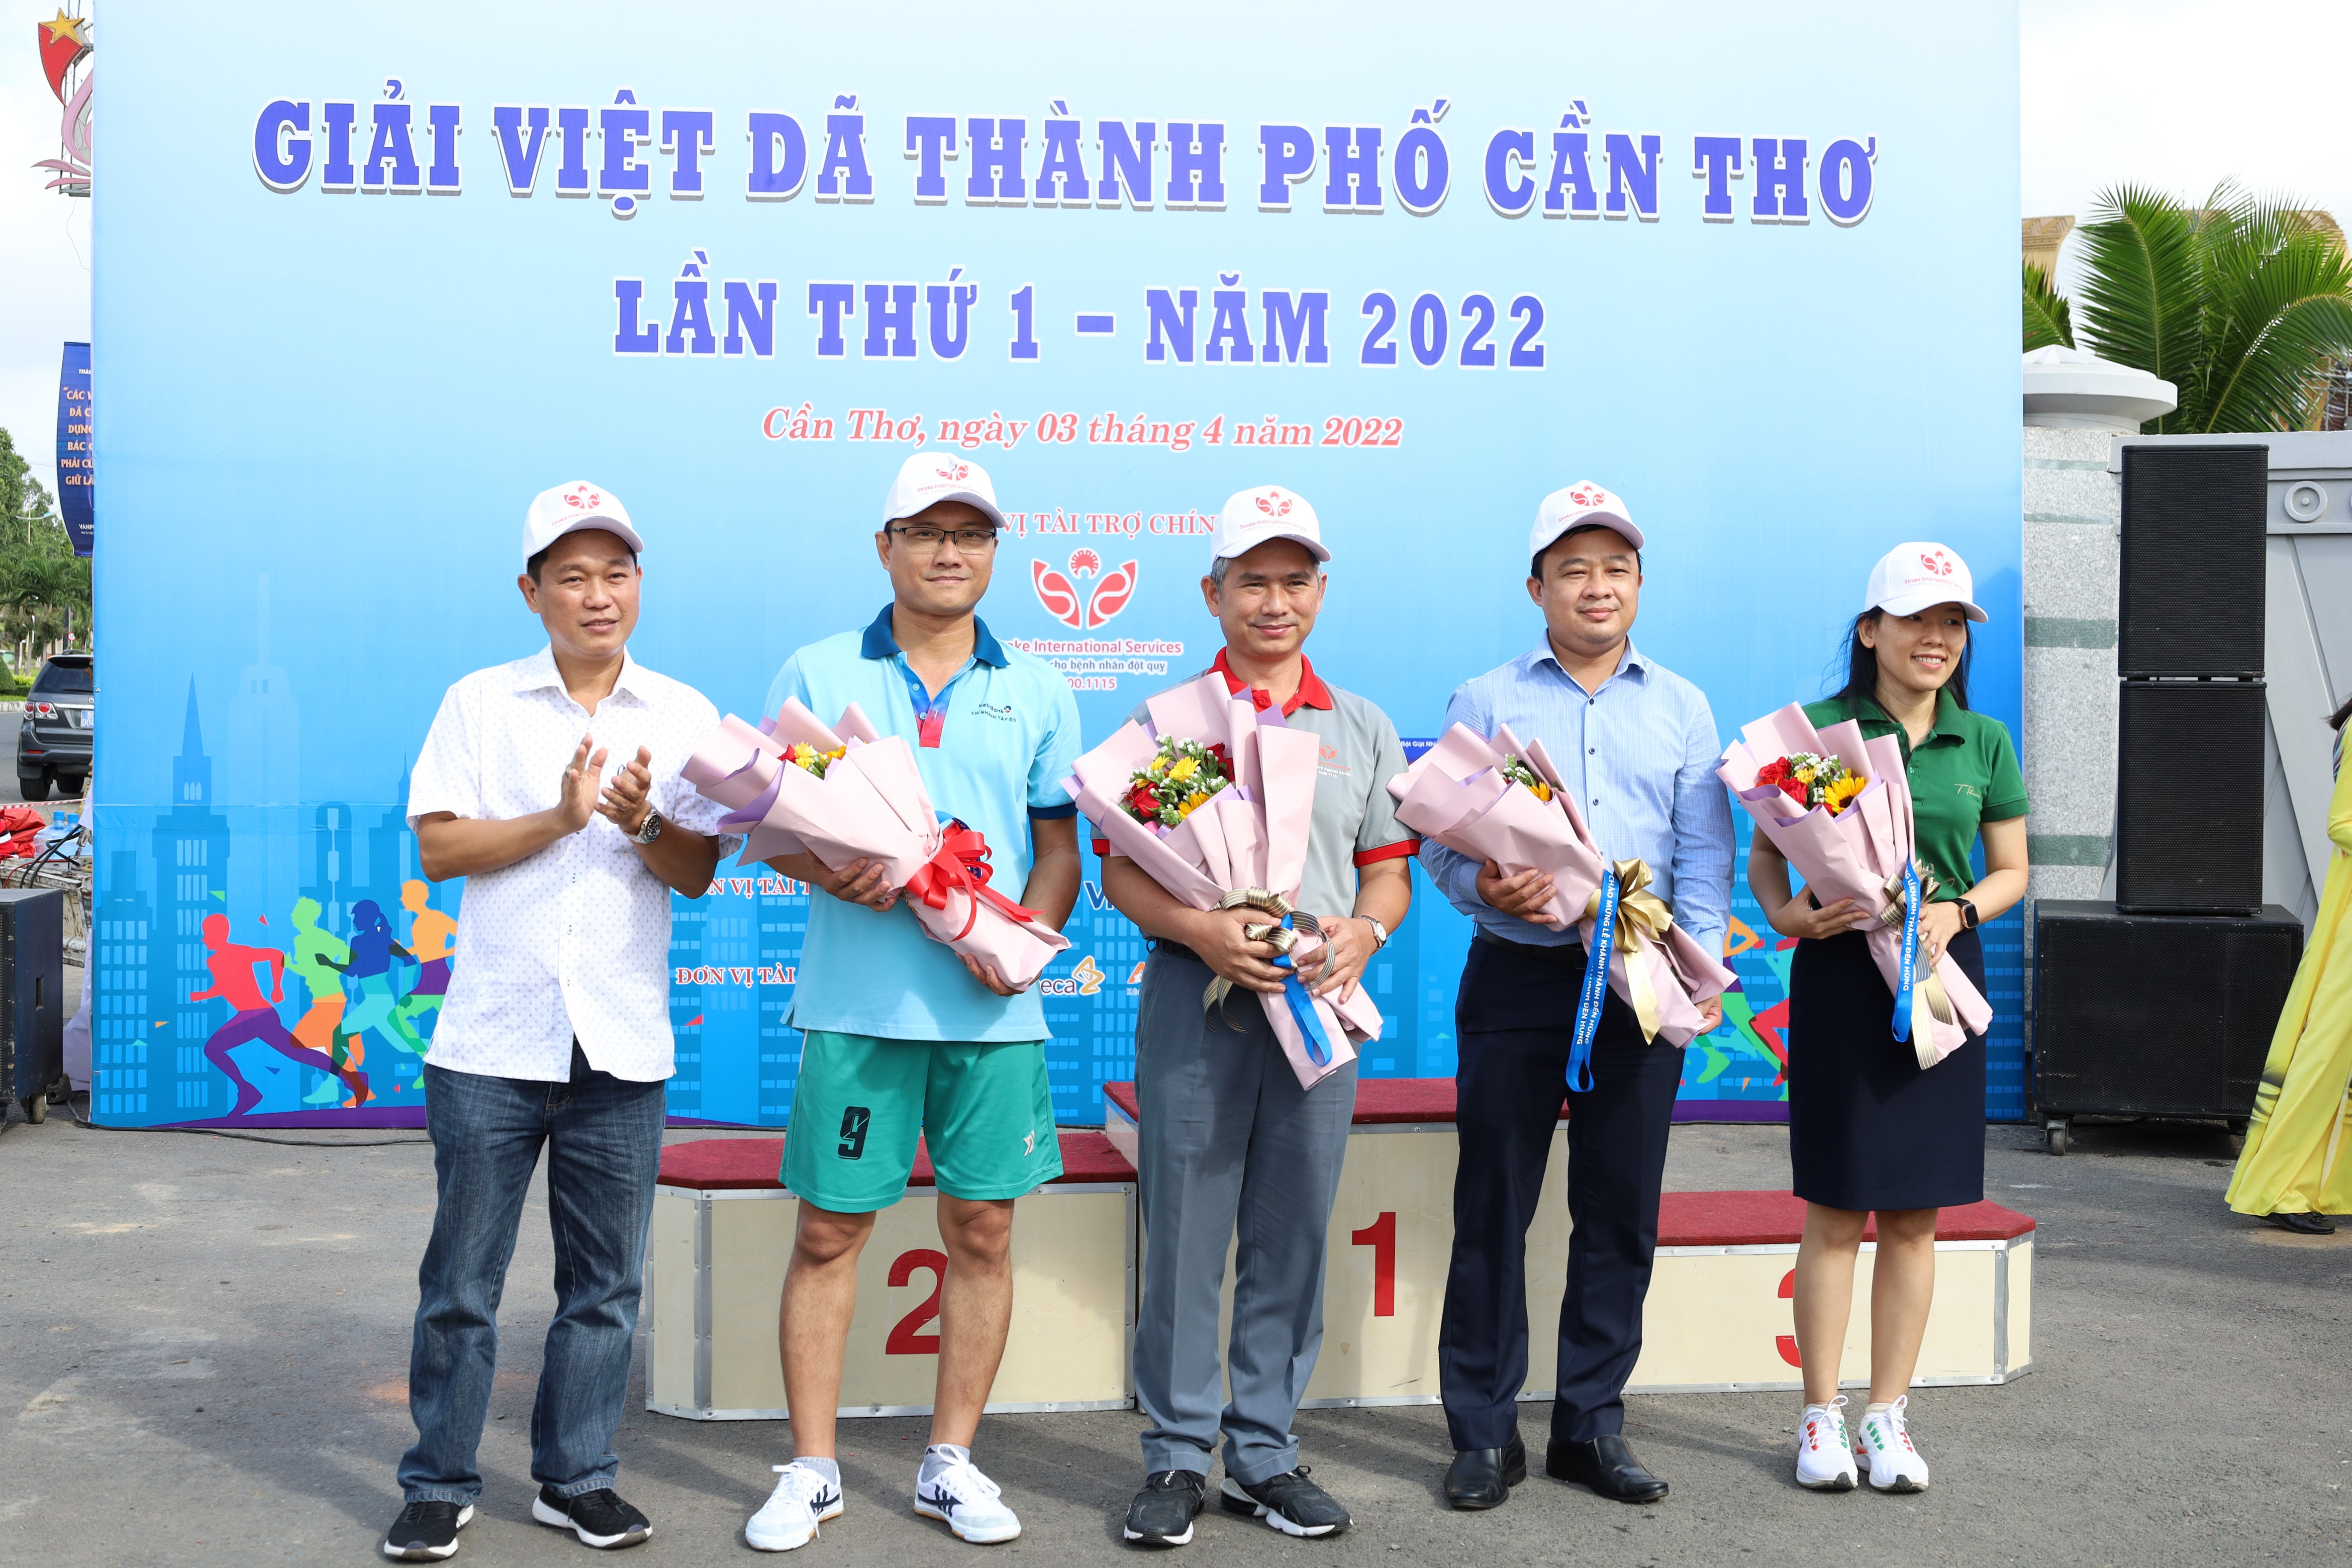 Ông Trương Công Quốc Việt – Phó Giám đốc Sở Văn hóa, Thể thao và Du lịch TP. Cần Thơ, Trưởng Ban Tổ chức giải tặng hoa cho các nhà tài trợ.